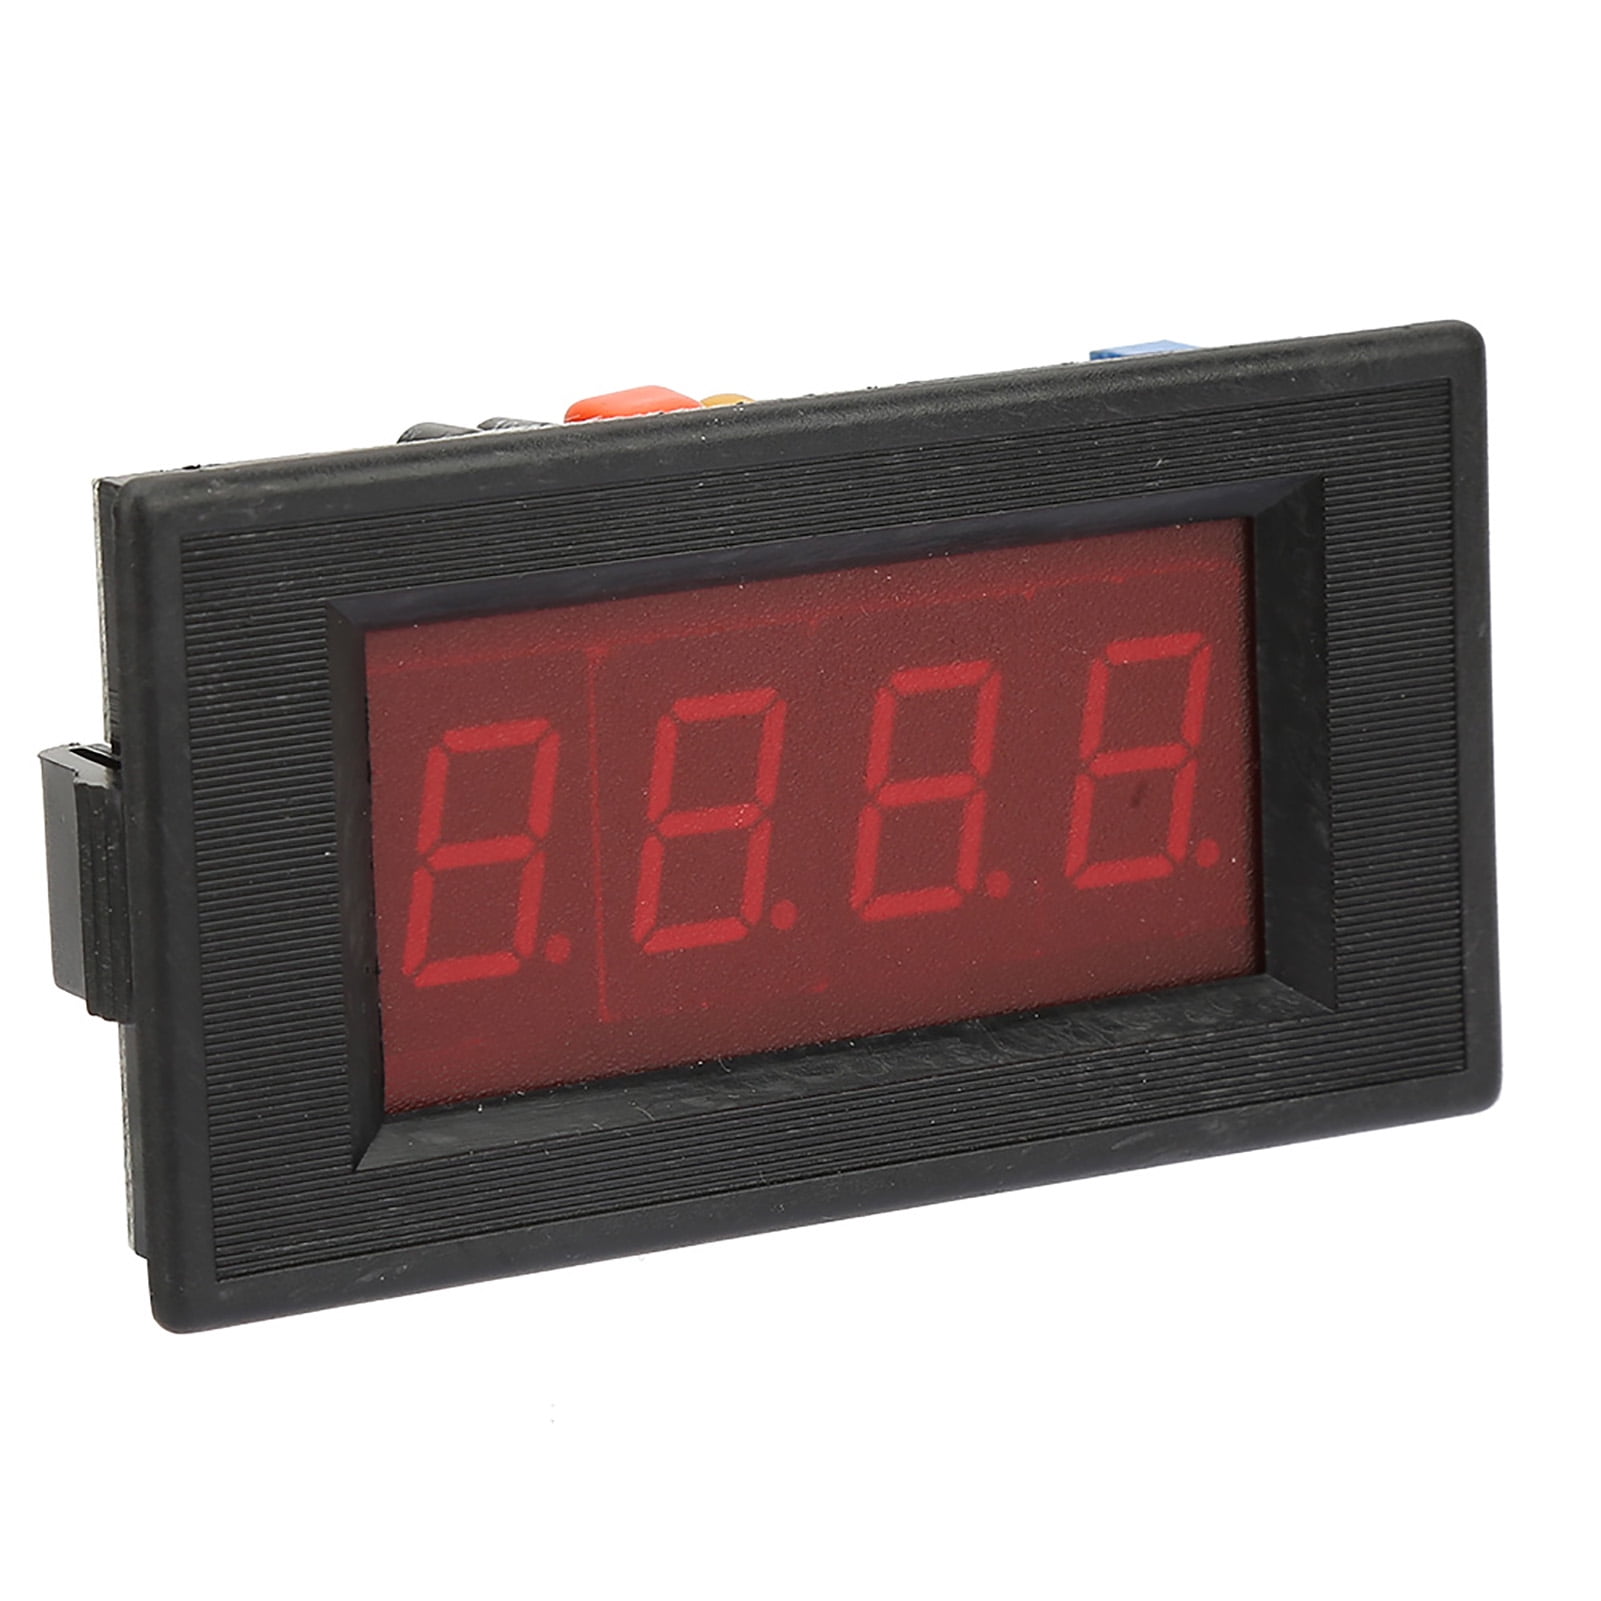 NEW High Accuracy DC Voltmeter Digital Panel Meter for DC300V/DC400V/DC500V HQ 